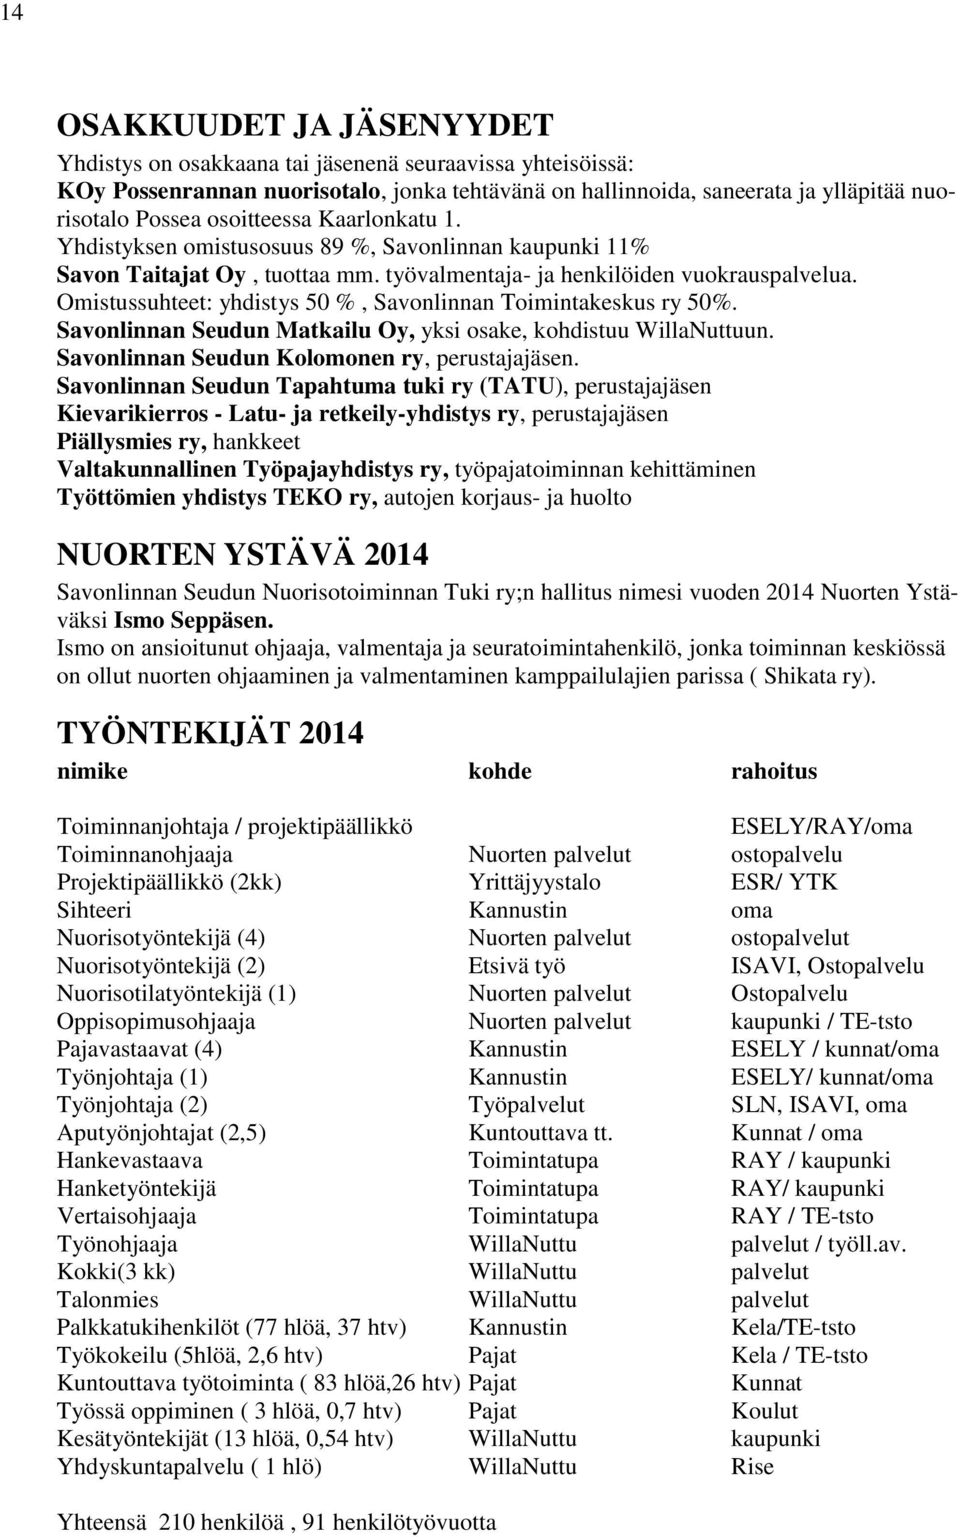 Omistussuhteet: yhdistys 50 %, Savonlinnan Toimintakeskus ry 50%. Savonlinnan Seudun Matkailu Oy, yksi osake, kohdistuu WillaNuttuun. Savonlinnan Seudun Kolomonen ry, perustajajäsen.